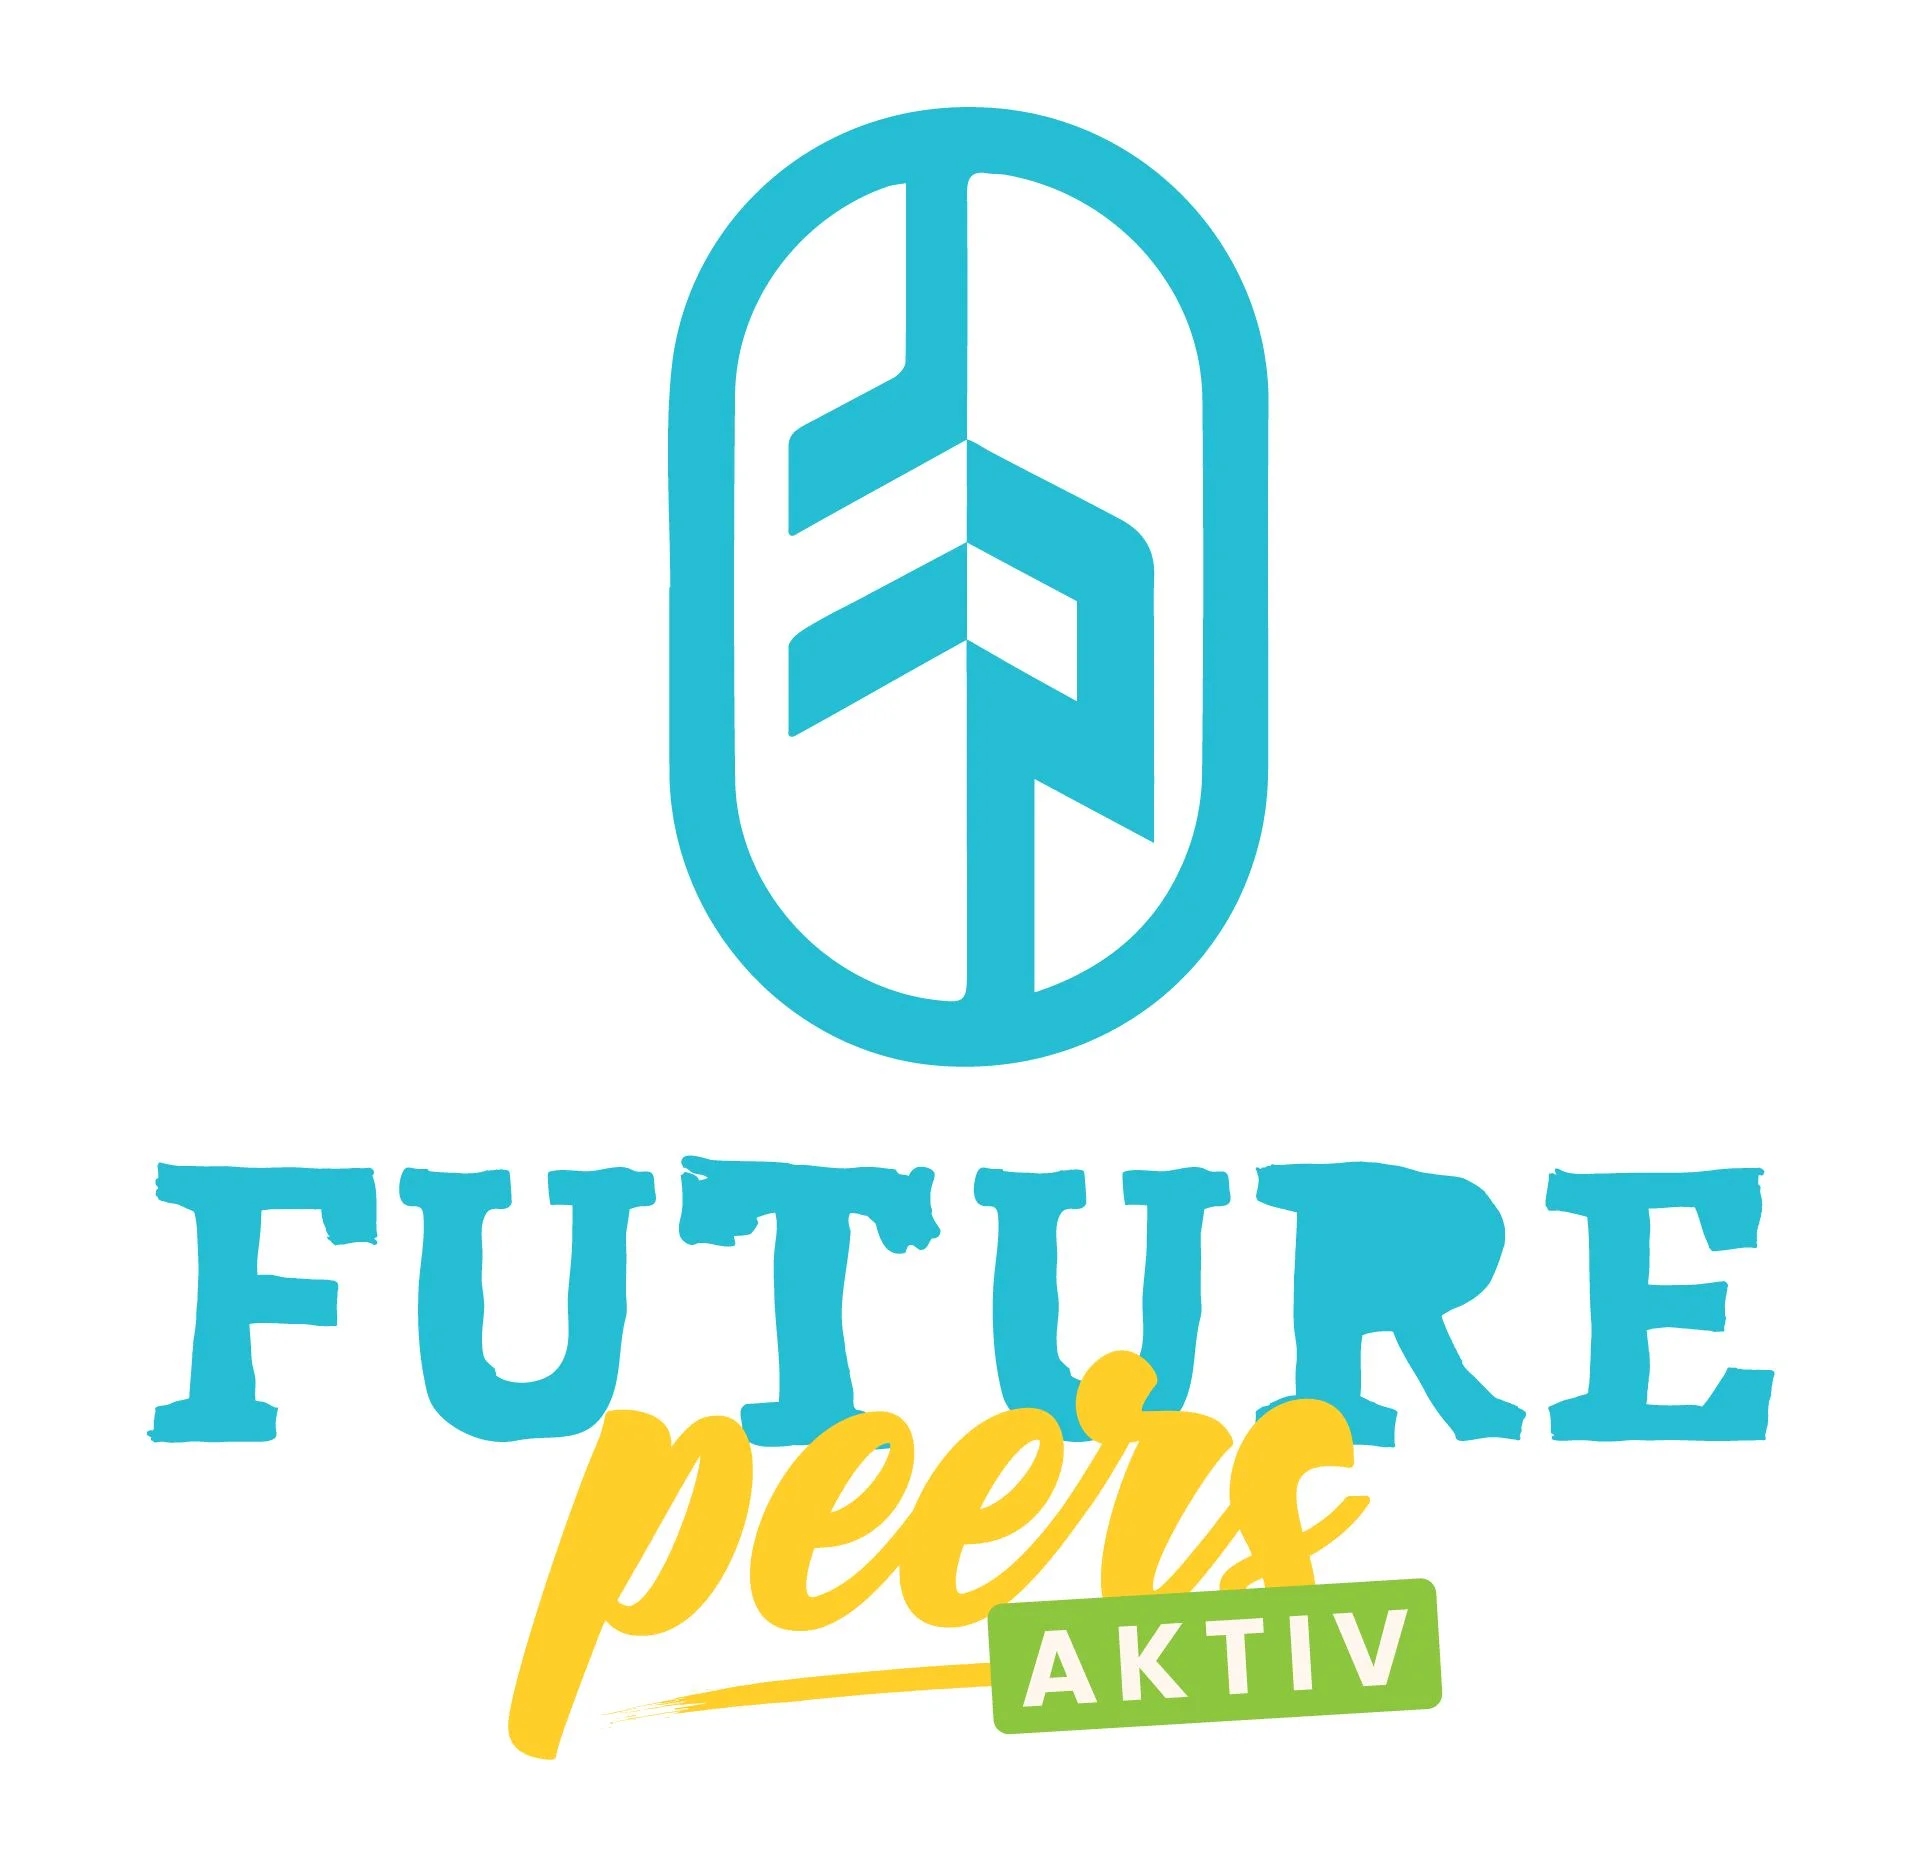 Future Peers AKTIV